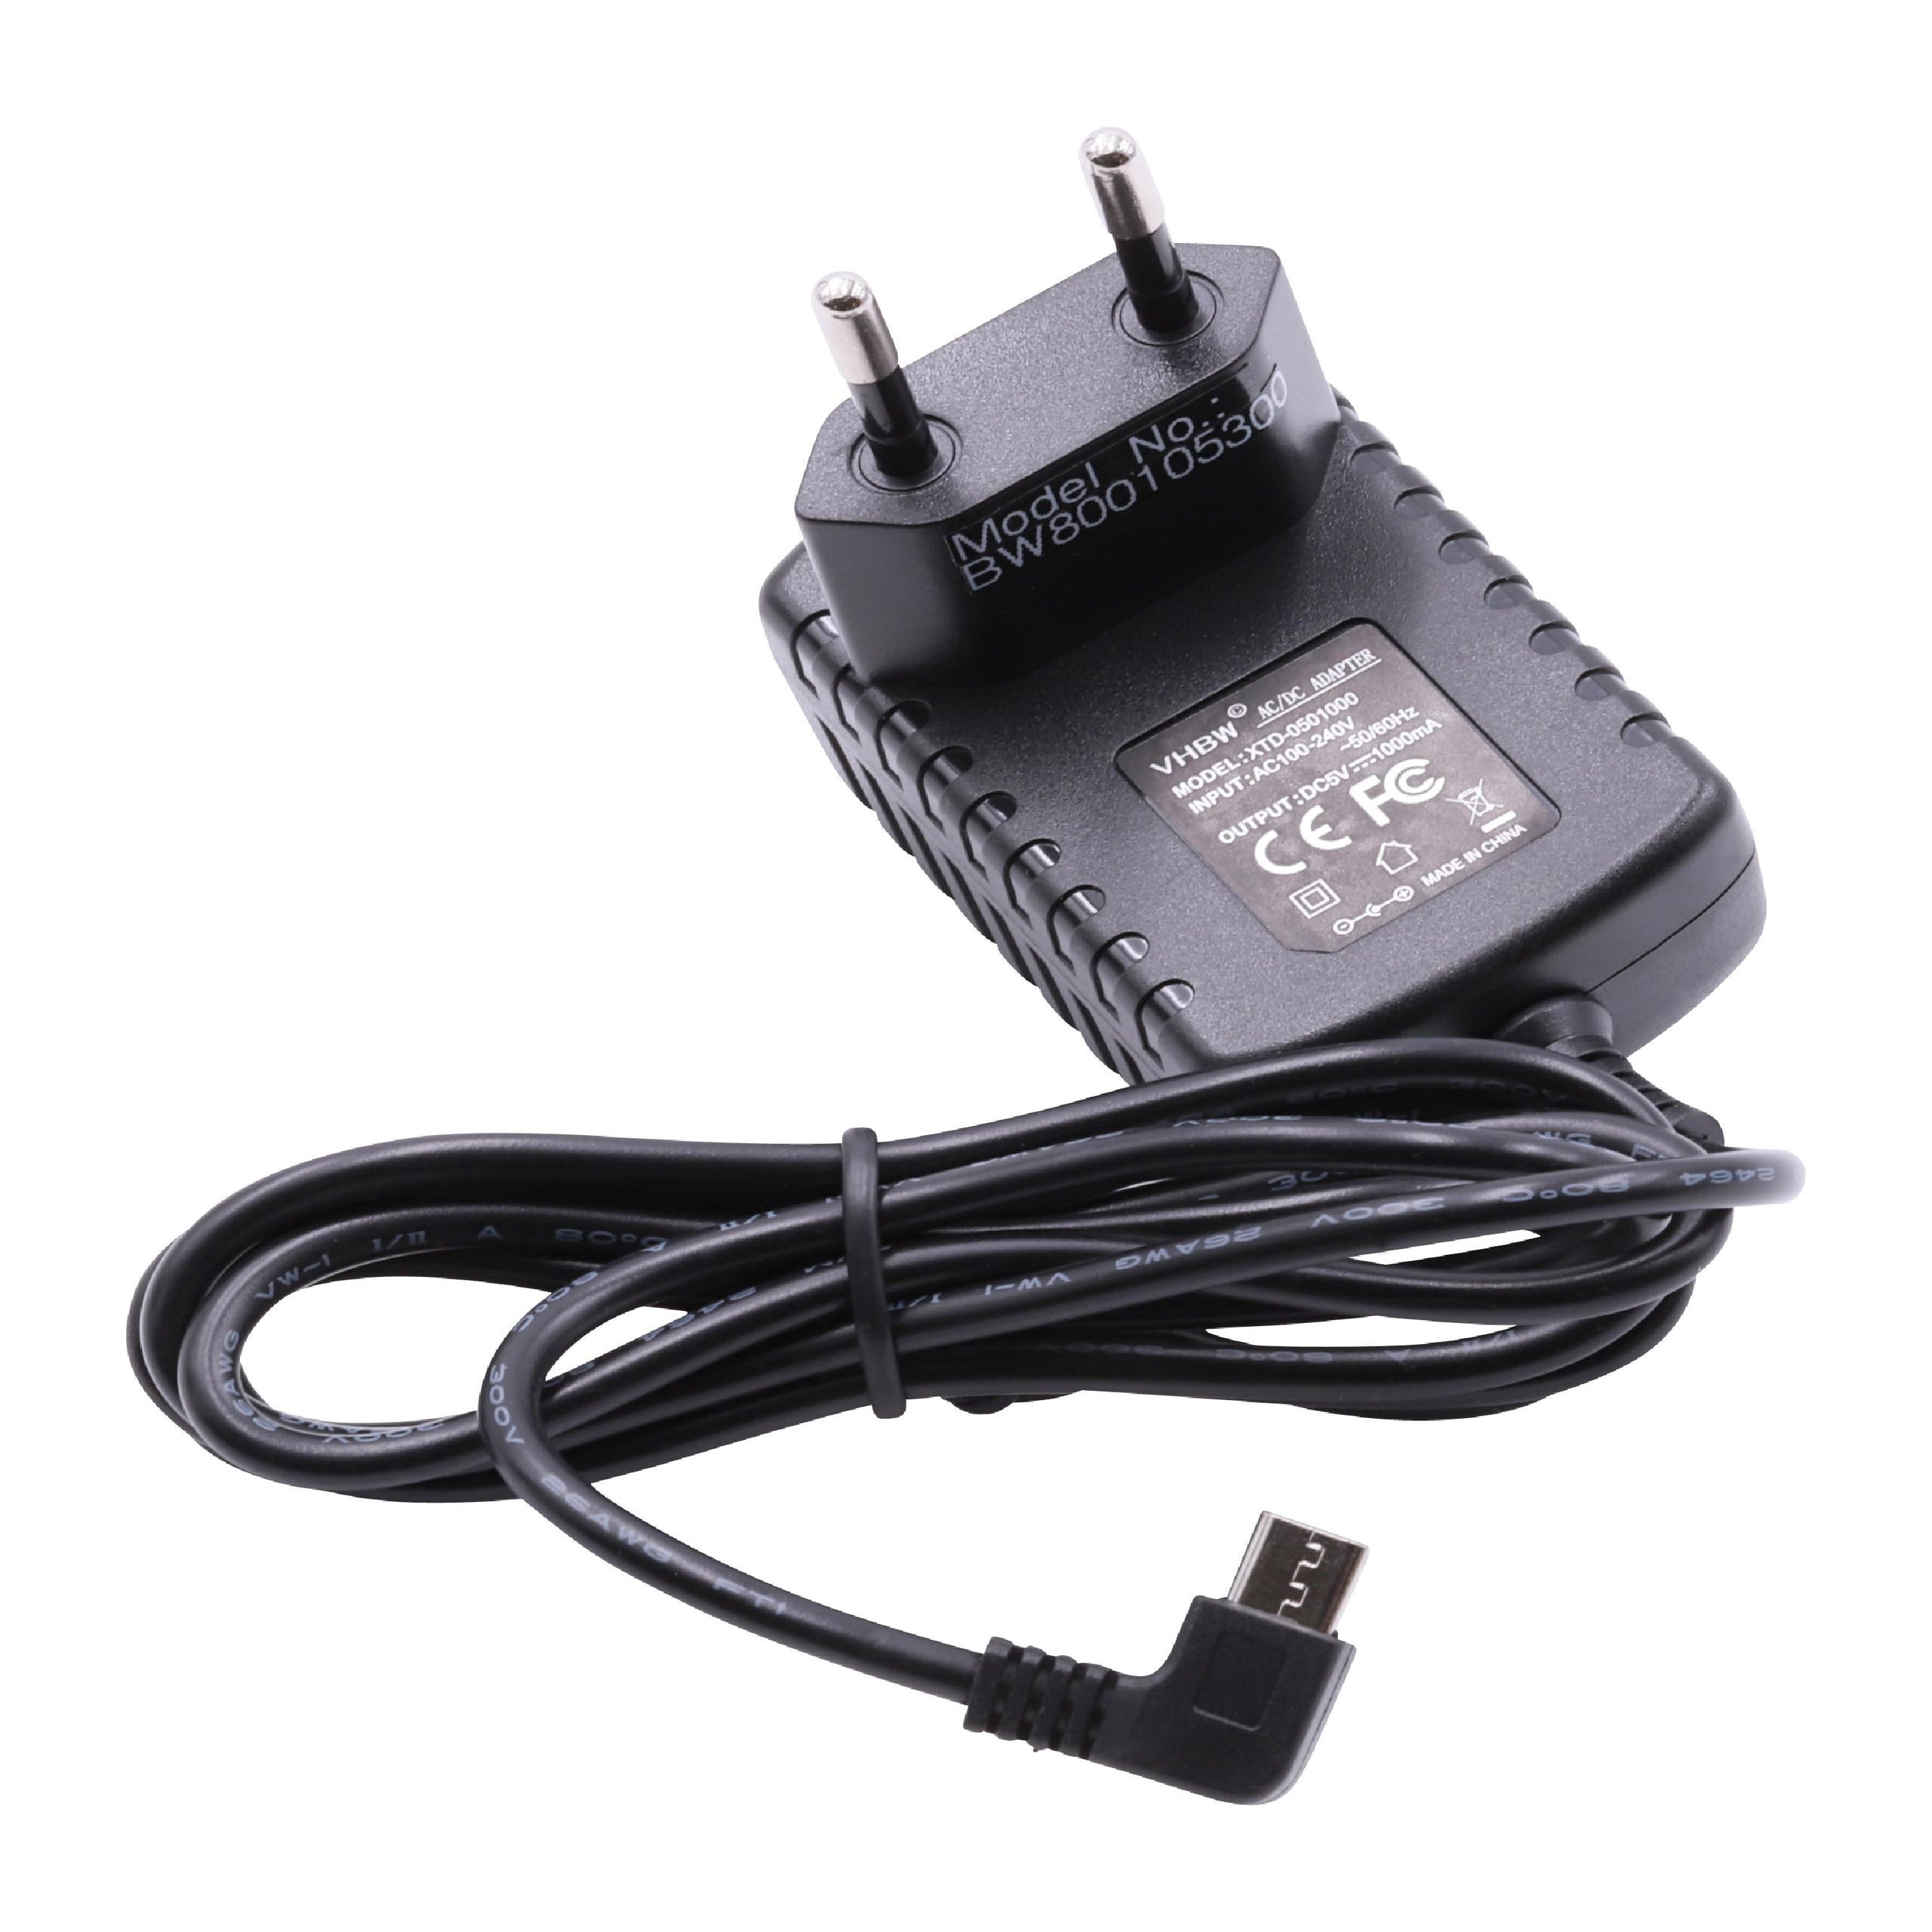 Vhbw Caricabatterie 110-220V Micro USB compatibile con cellulare, smartphone  Android, tablet, navigatore, cavo di alimentazione presa EU, nero